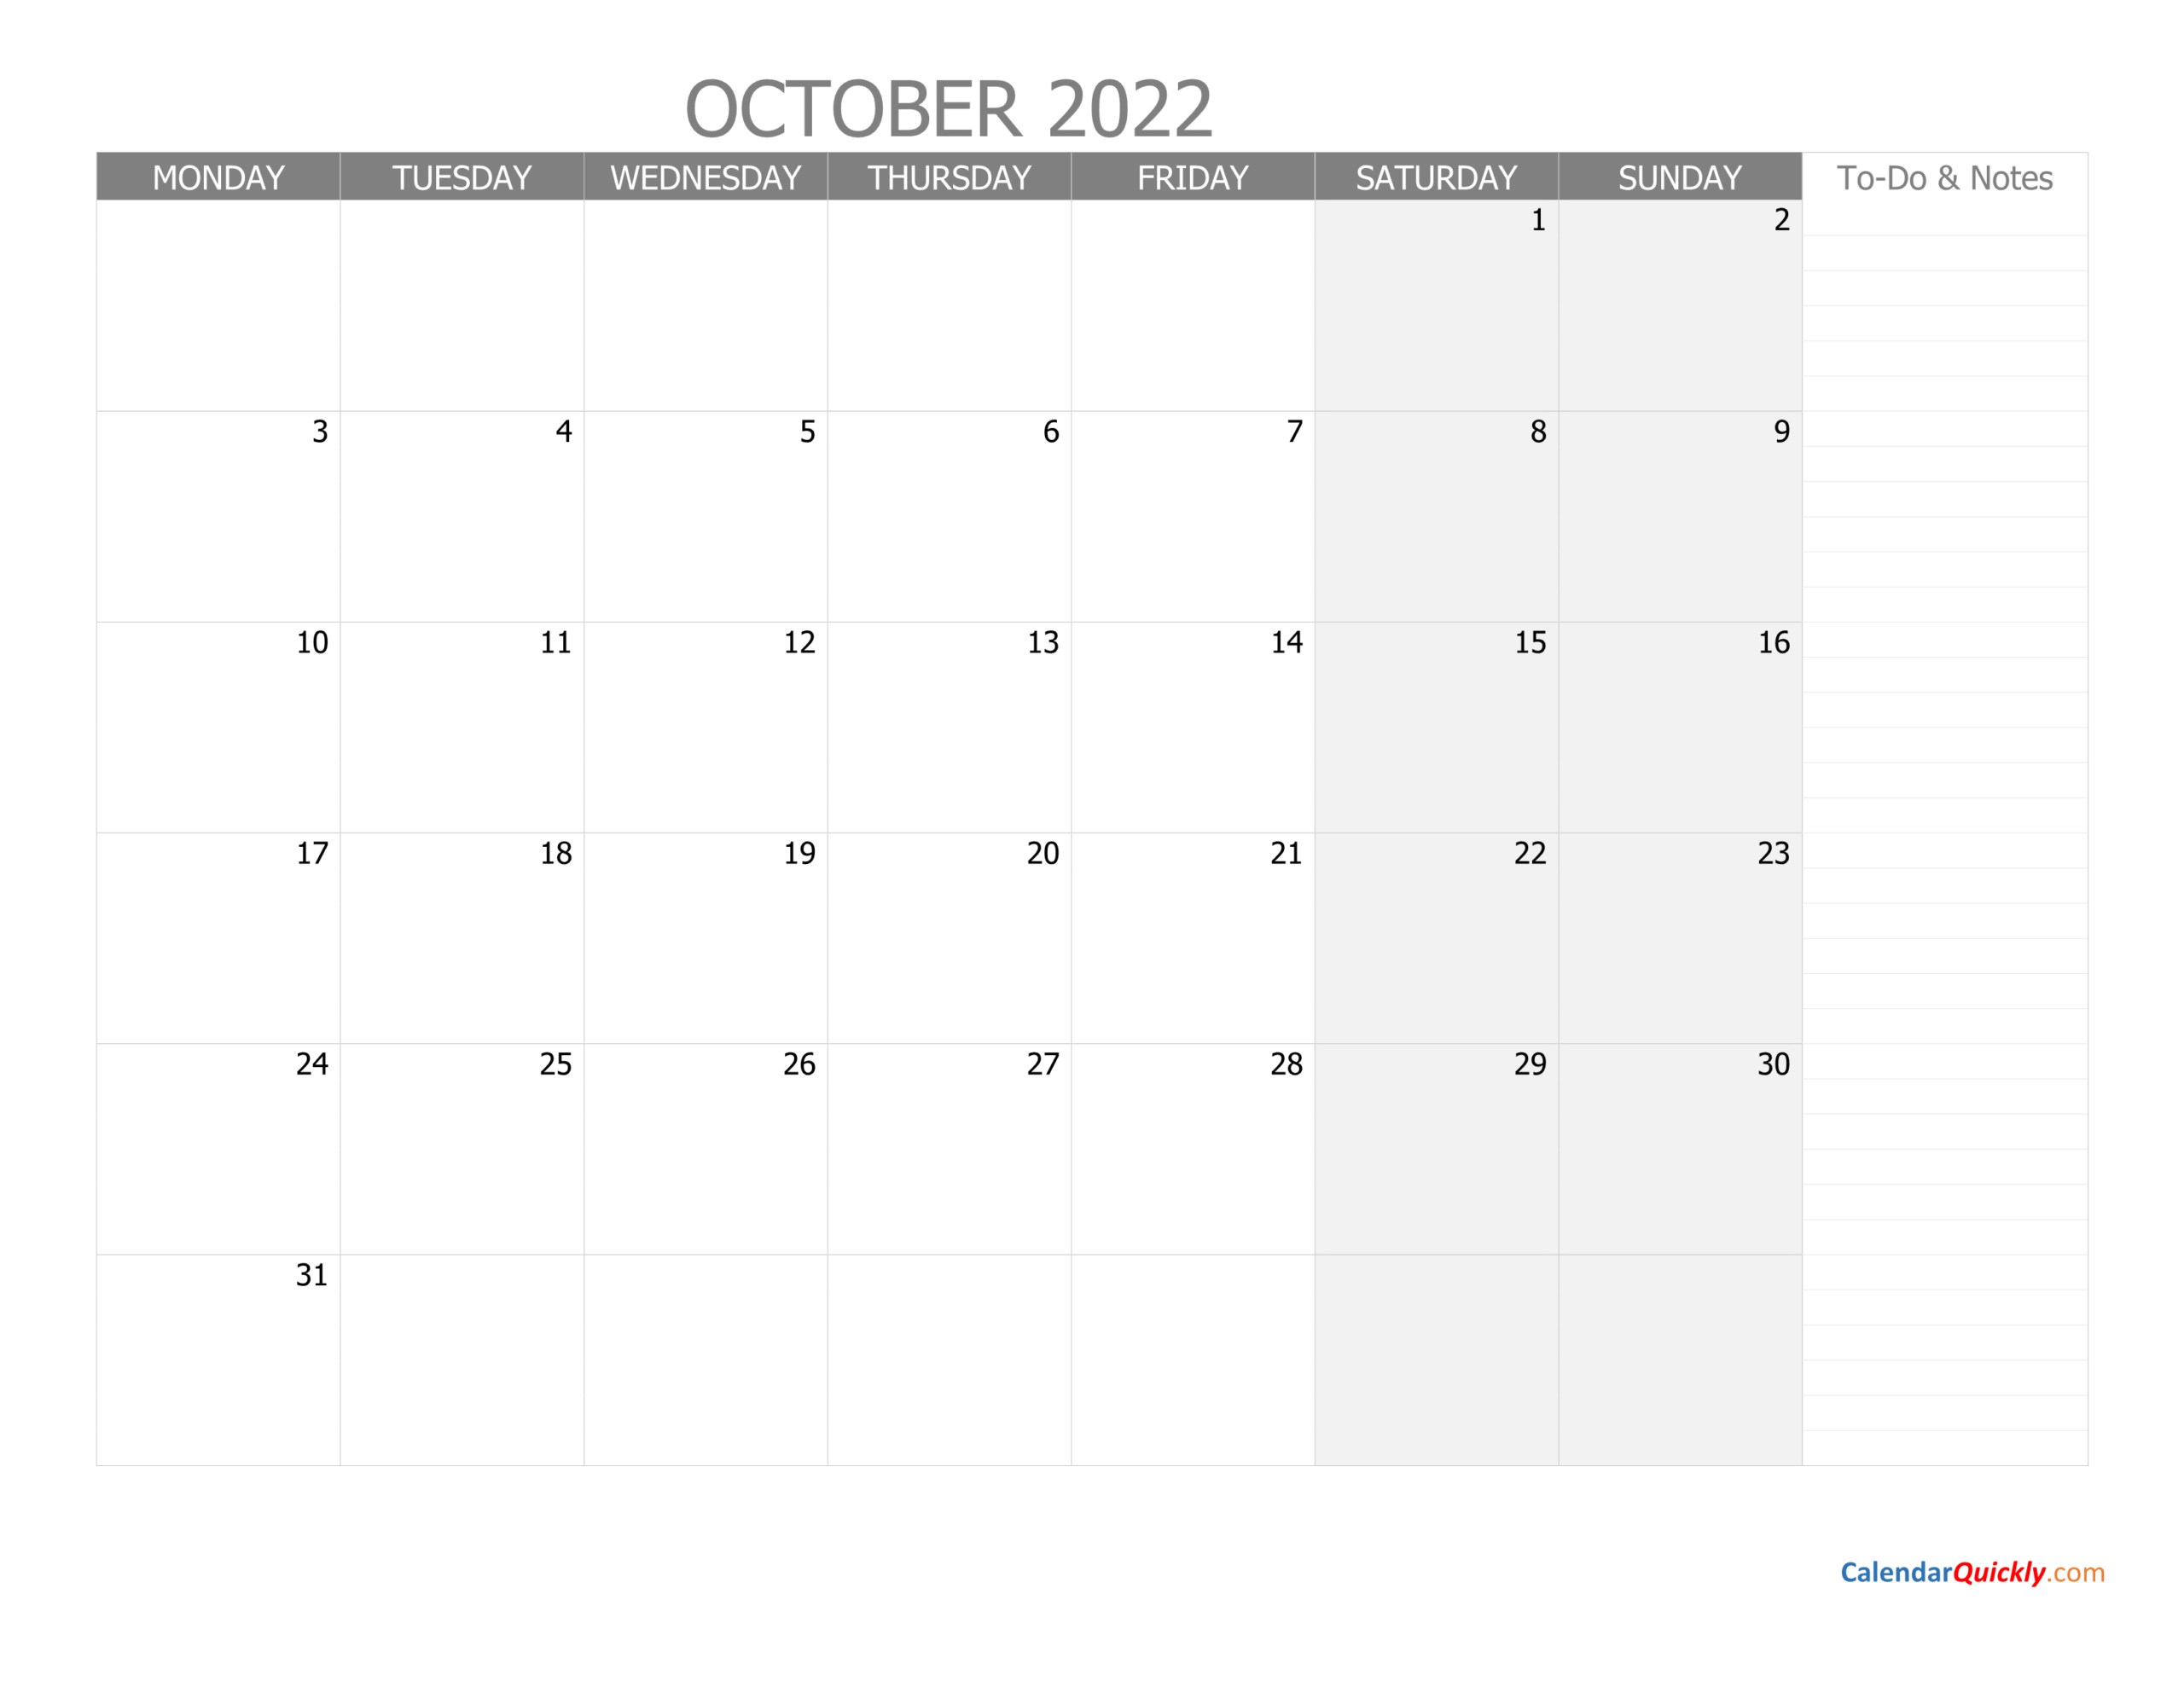 October Monday Calendar 2022 With Notes | Calendar Quickly